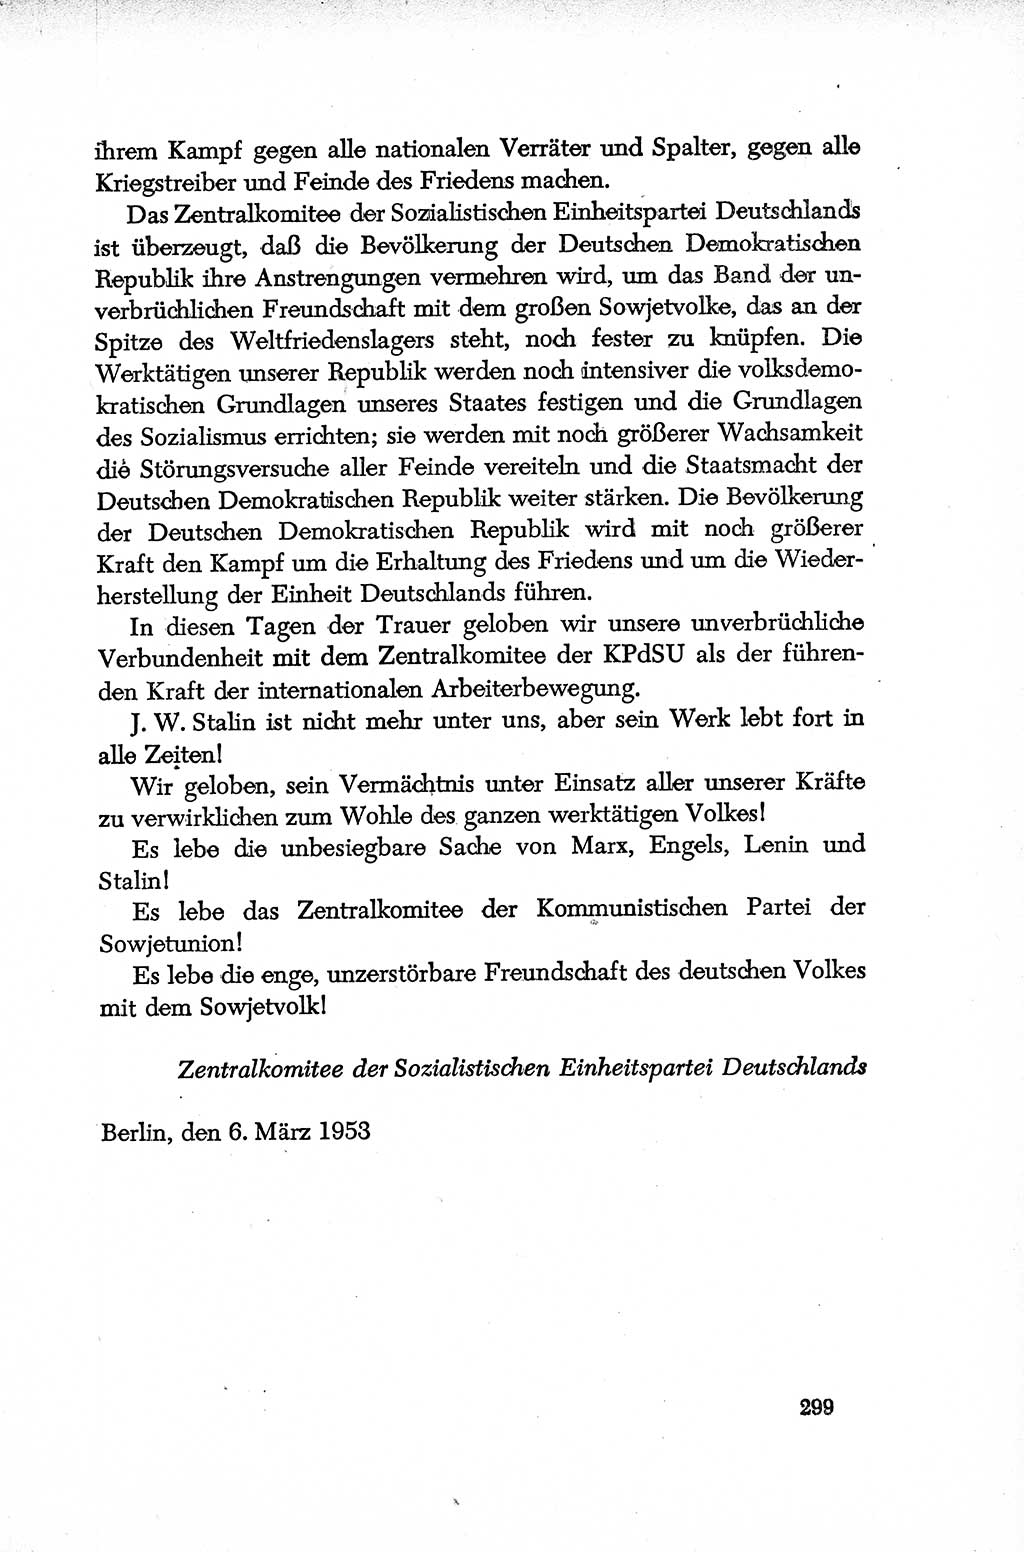 Dokumente der Sozialistischen Einheitspartei Deutschlands (SED) [Deutsche Demokratische Republik (DDR)] 1952-1953, Seite 299 (Dok. SED DDR 1952-1953, S. 299)